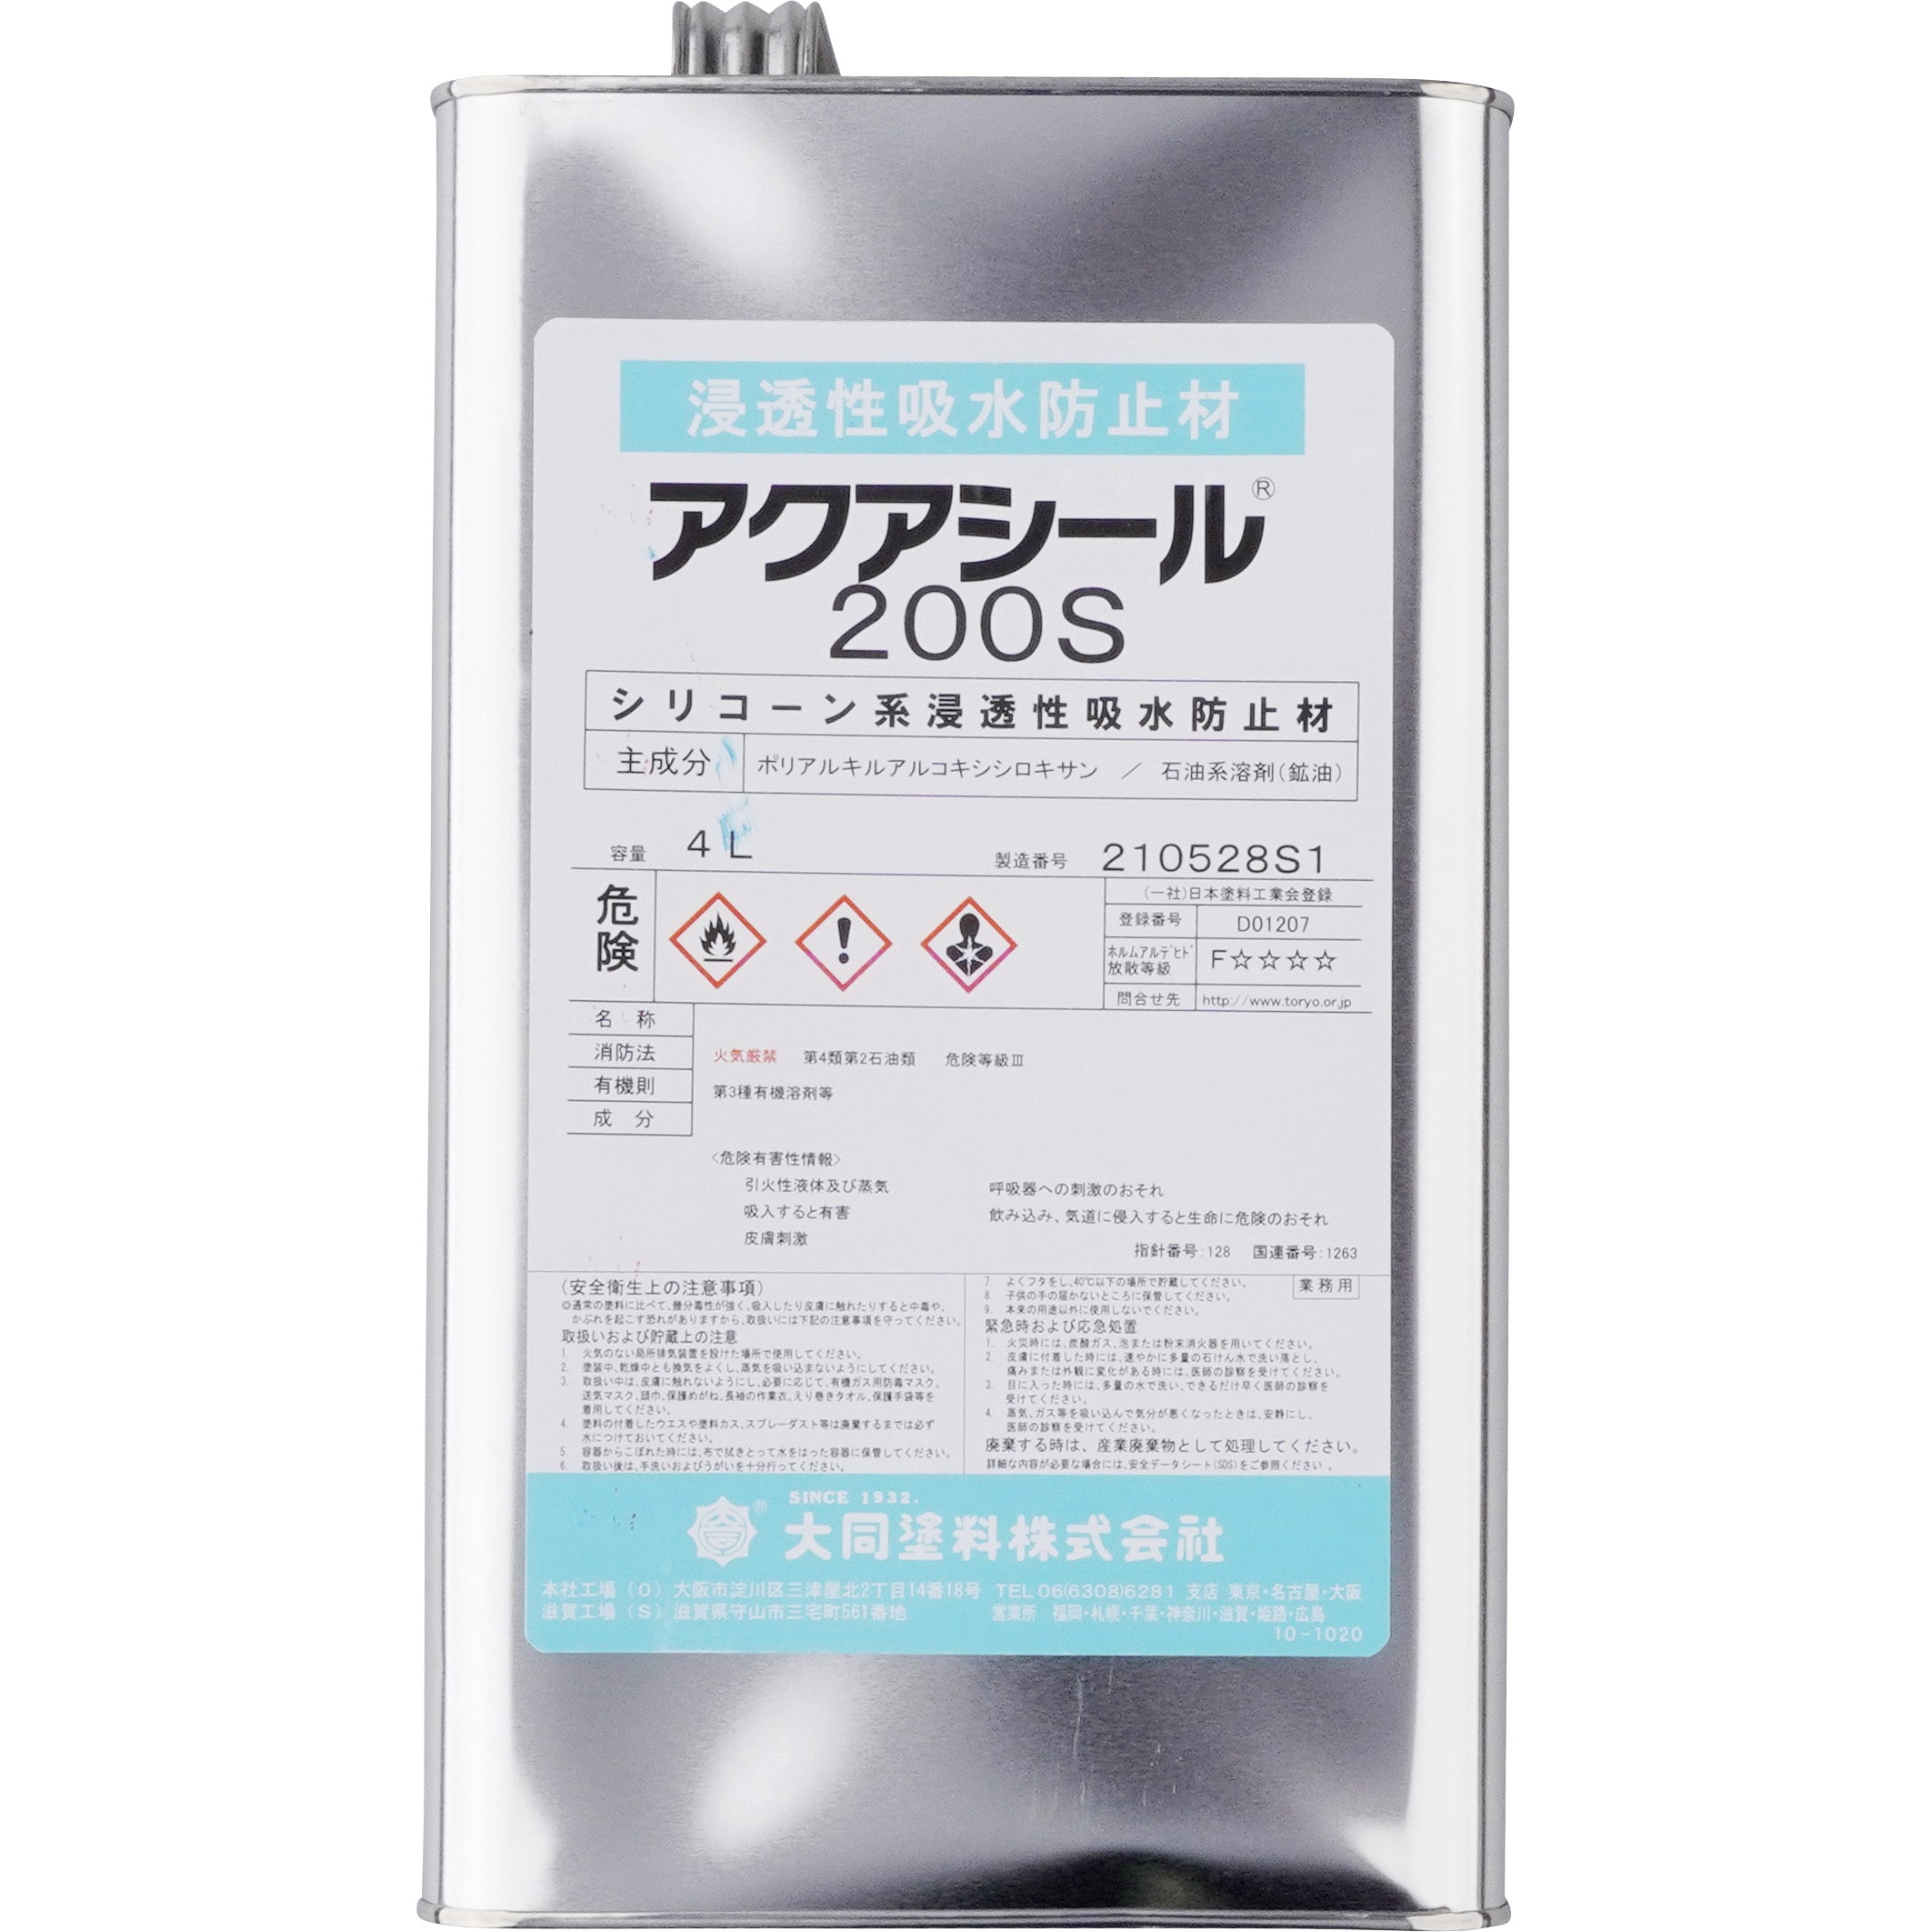 信越産業(株) アクアシール1400 10kg缶 シラン・シロキサン系表面含浸材 コンクリート表面含浸材 - 4